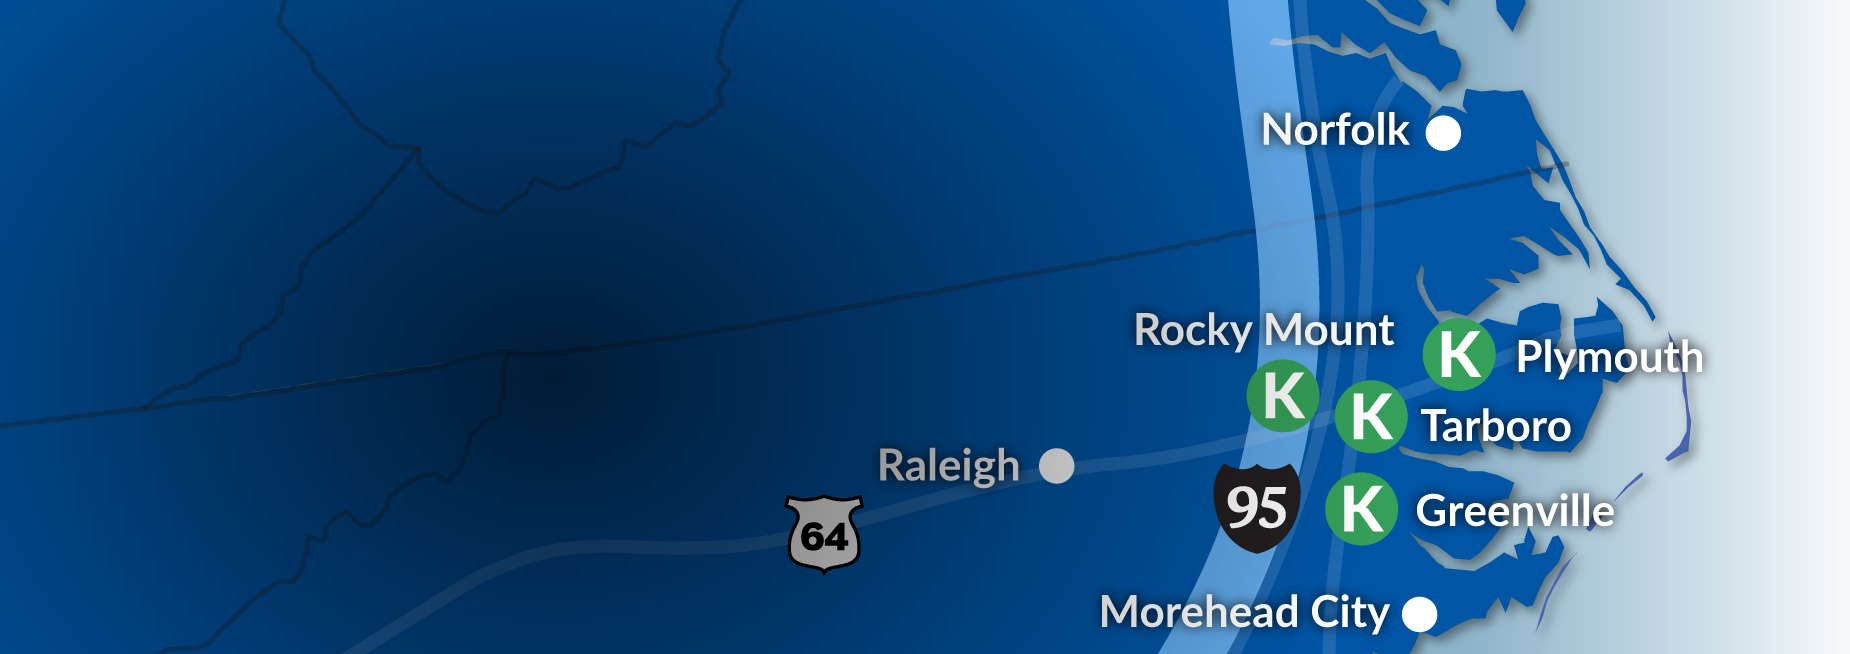 North Carolina logistics locations